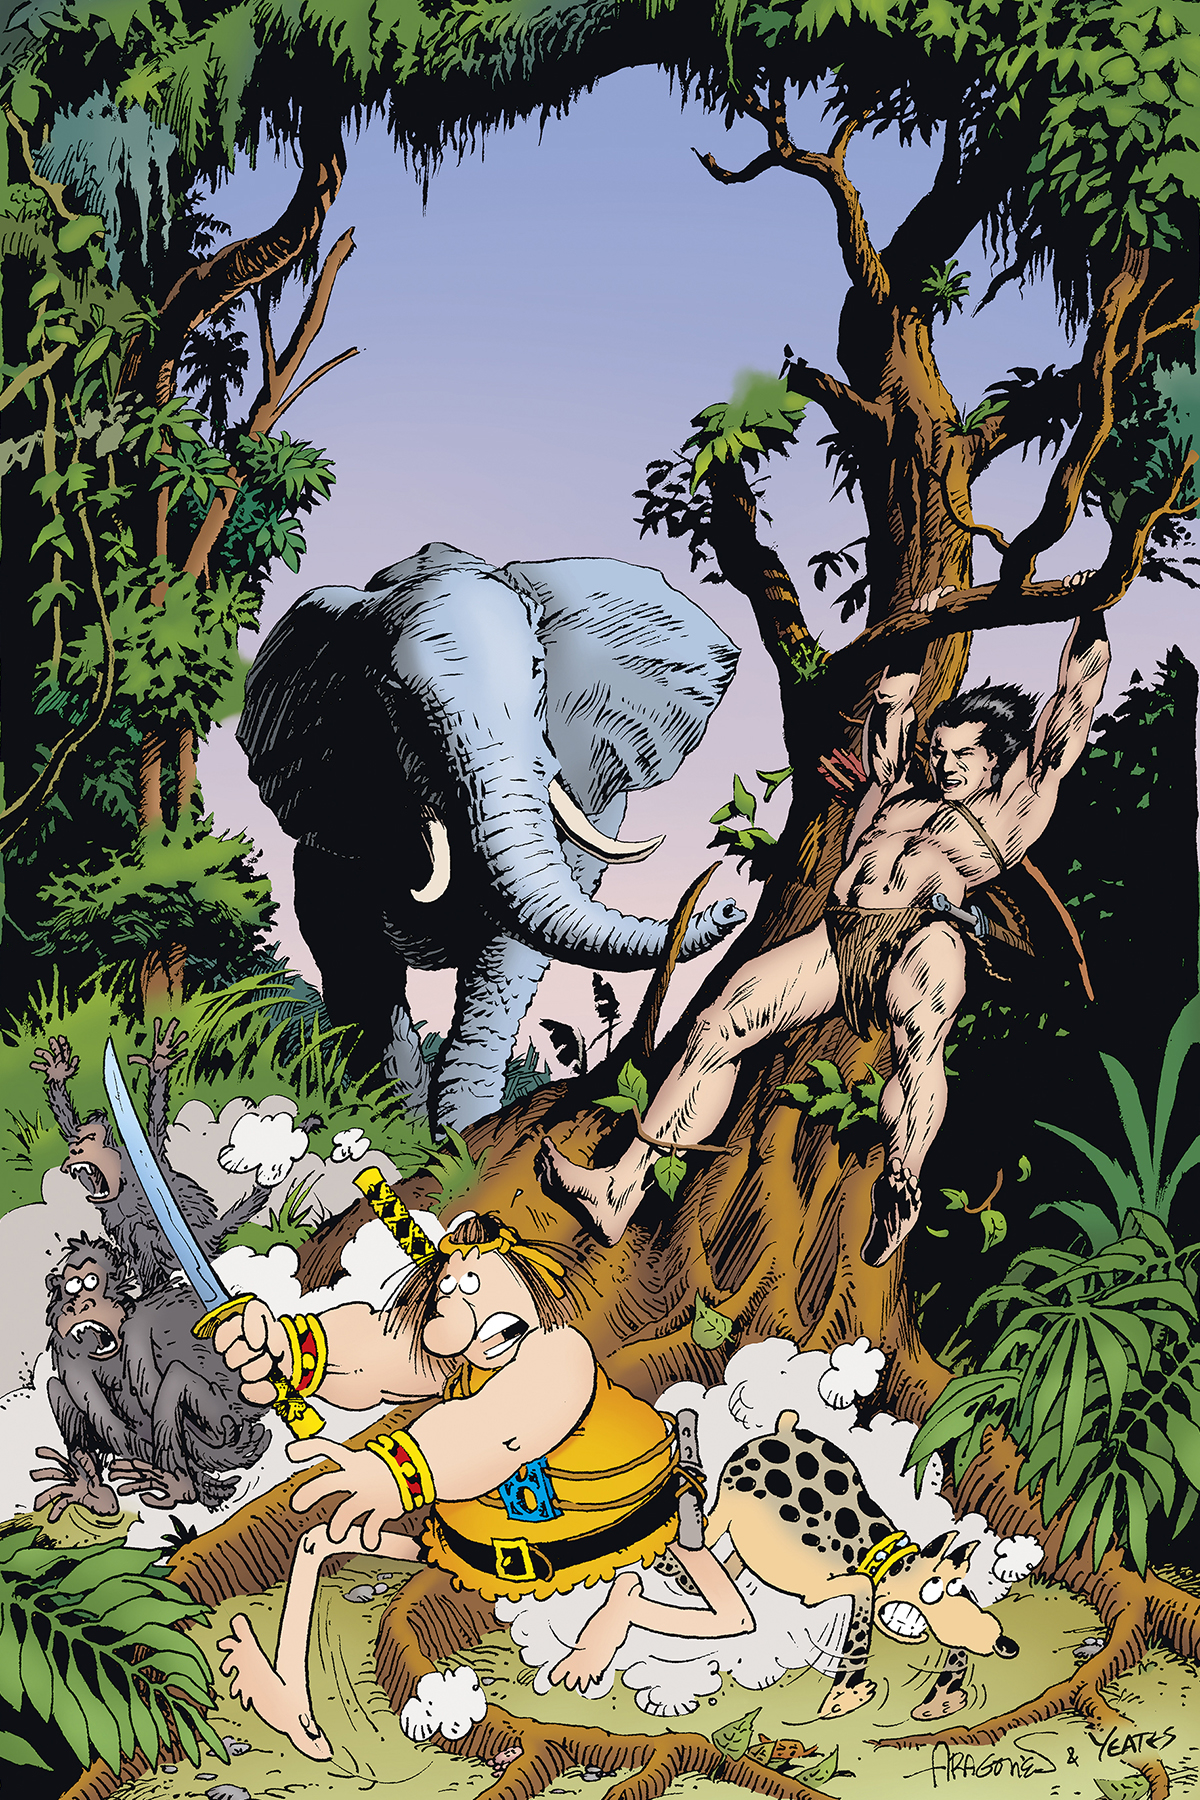 Groo Meets Tarzan #2 (Of 4)